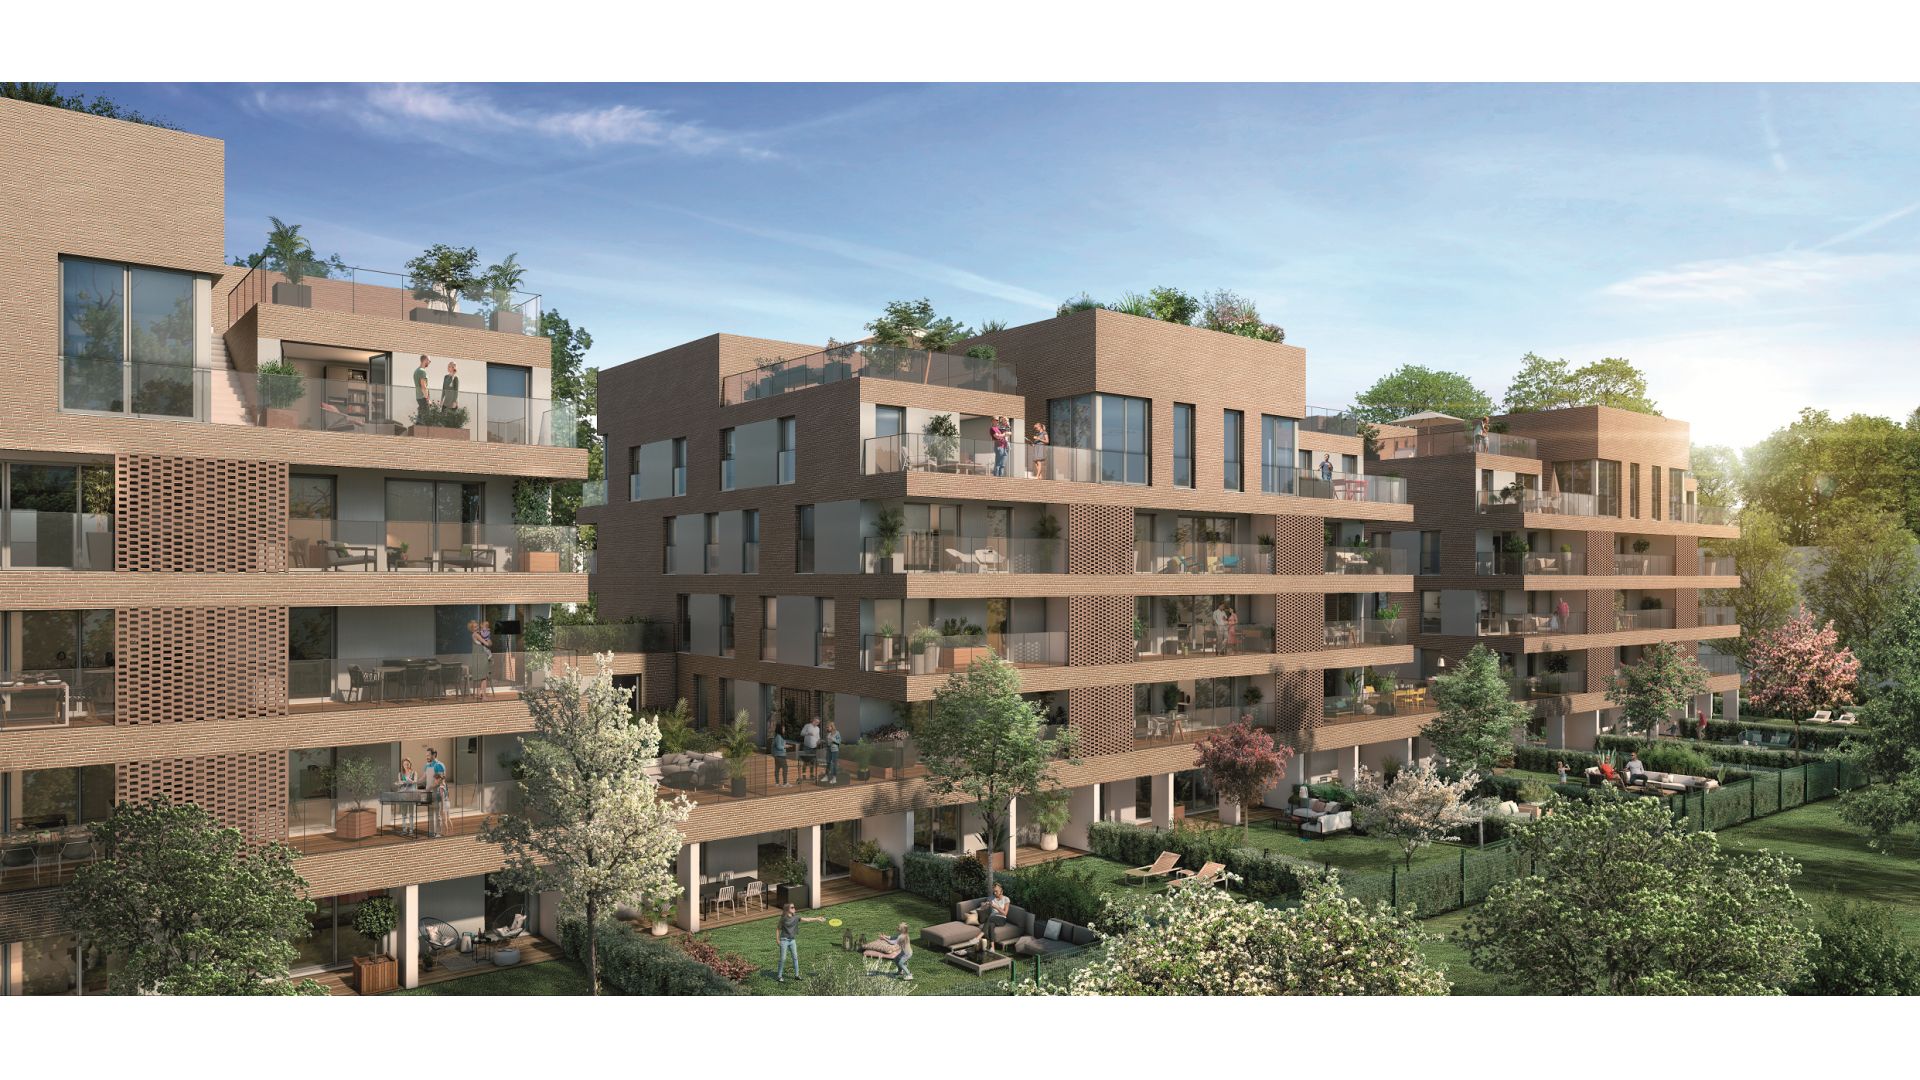 GreenCity immobilier - Toulouse quartier Saint-Cyprien 31300 - Patte D'Oie - allée Maurice sarraut - appartements neufs du T2 au T4